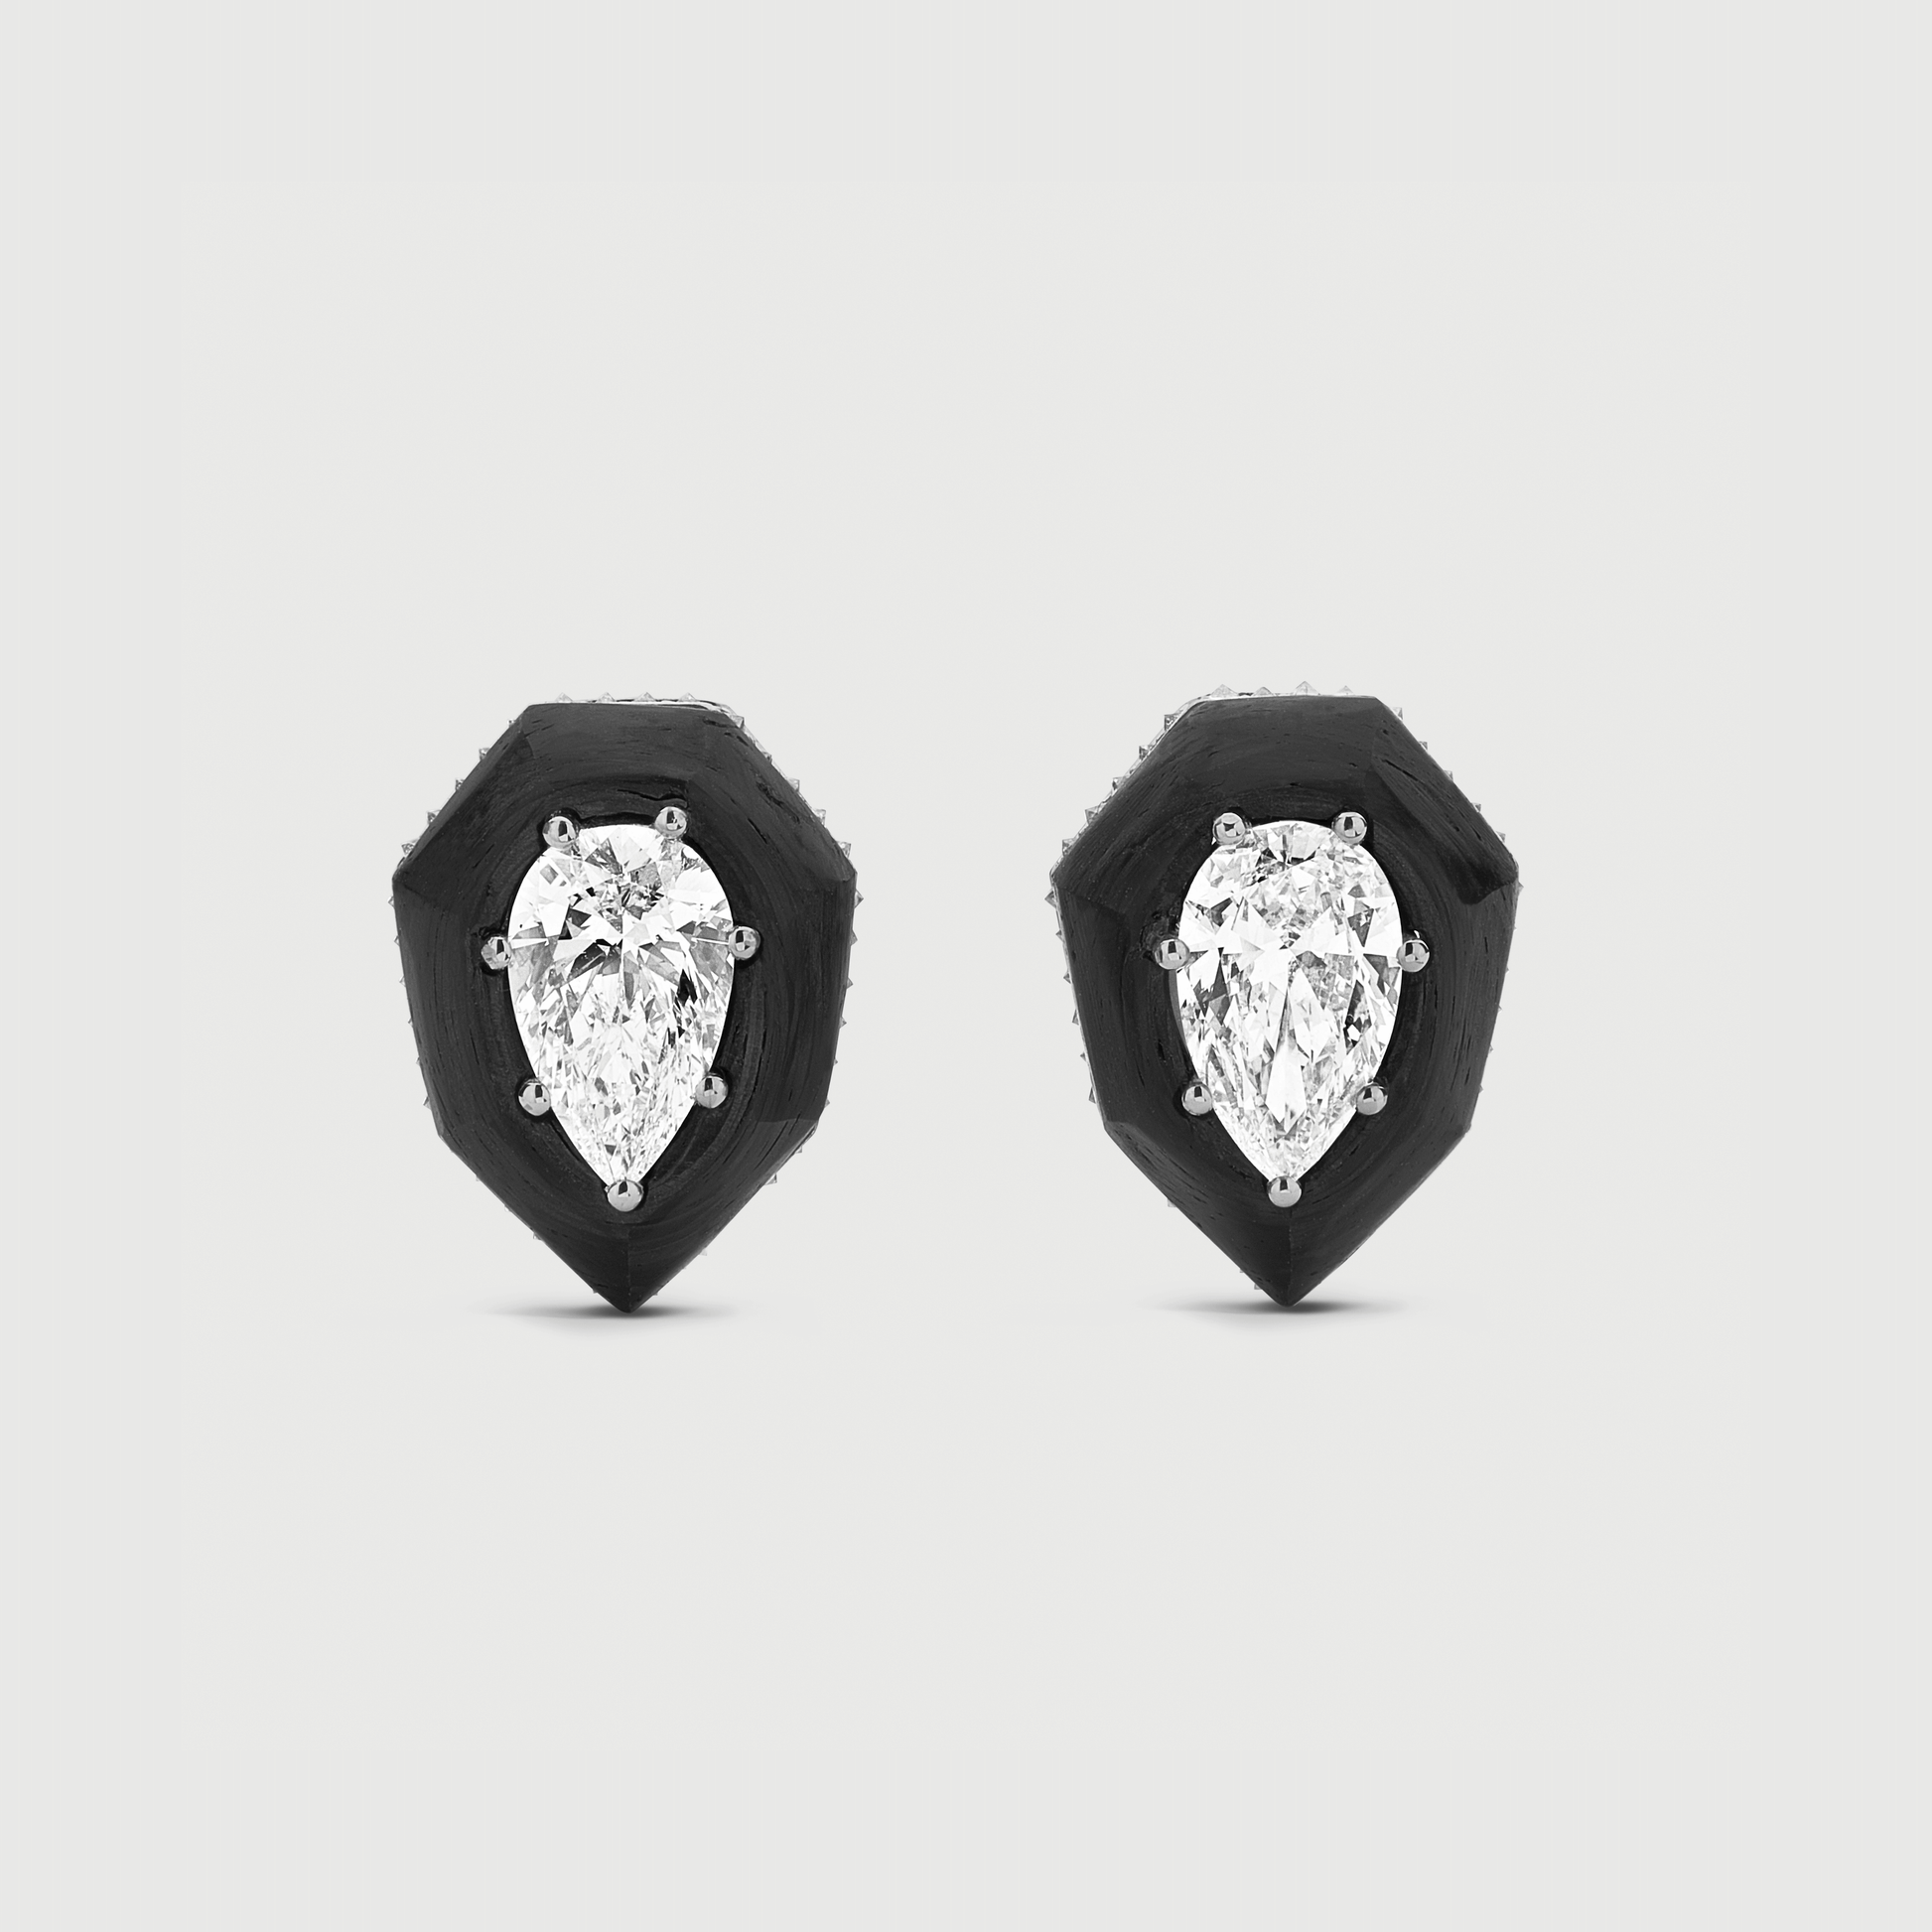 Carbon Fiber & White Diamonds Earrings